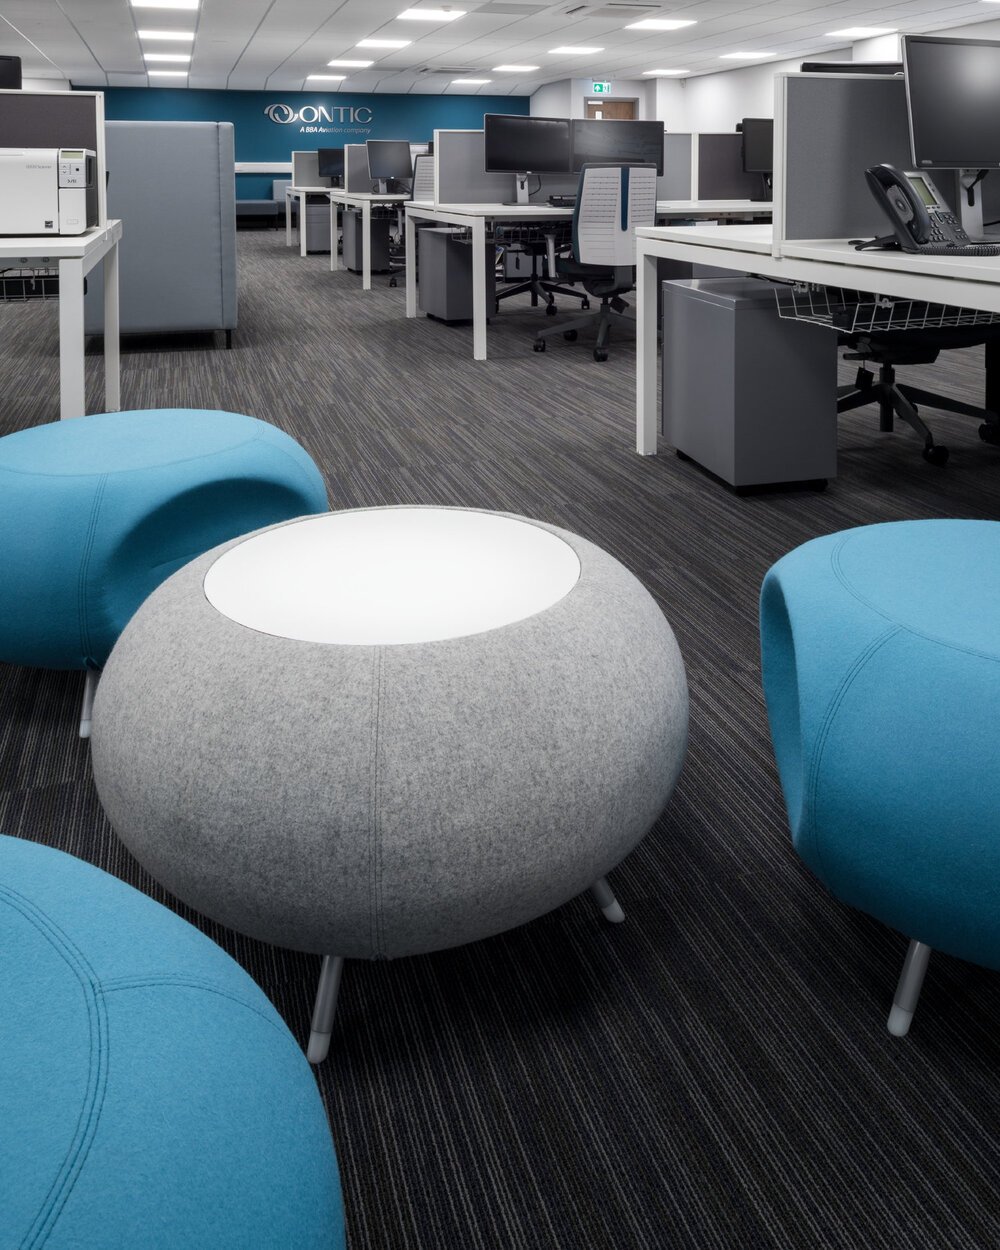 Ontic+office+stools.jpeg